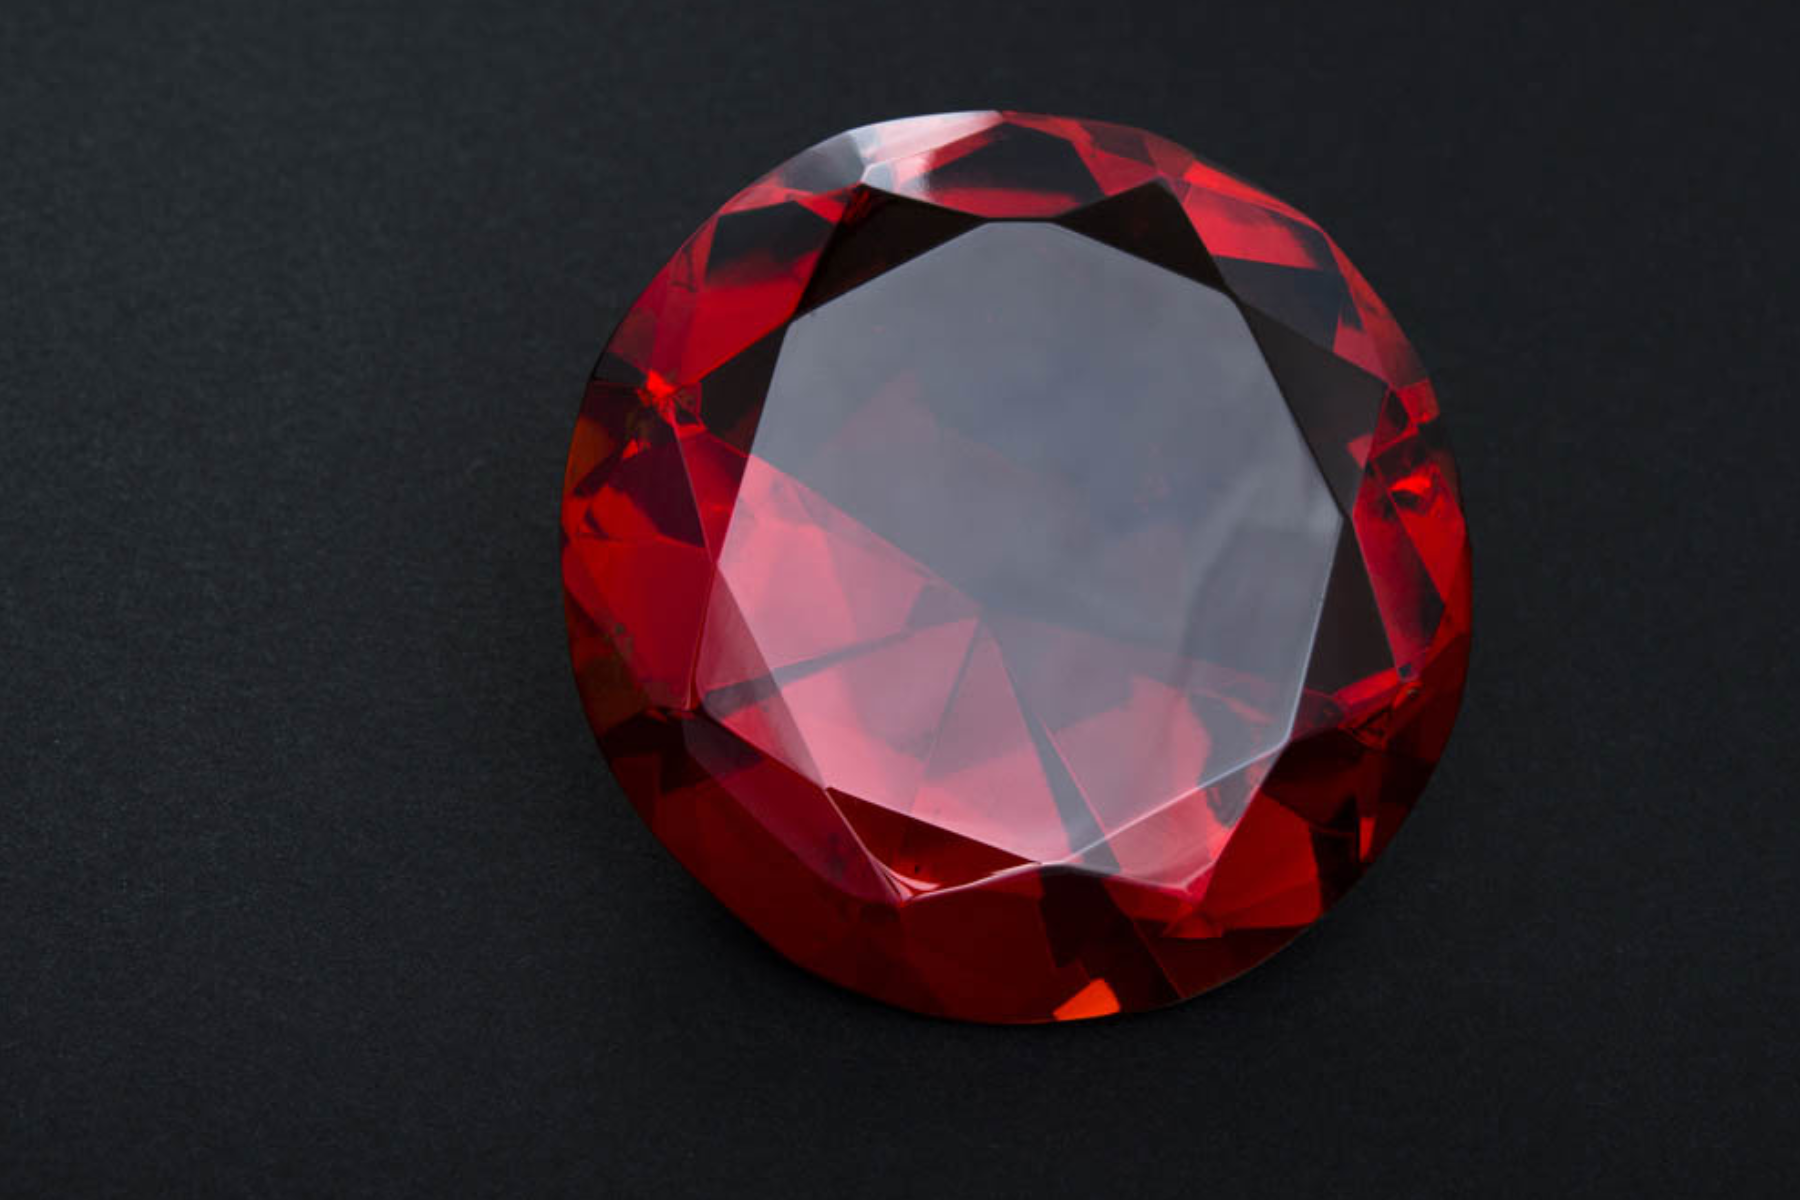 A Ruby gemstone on a black background